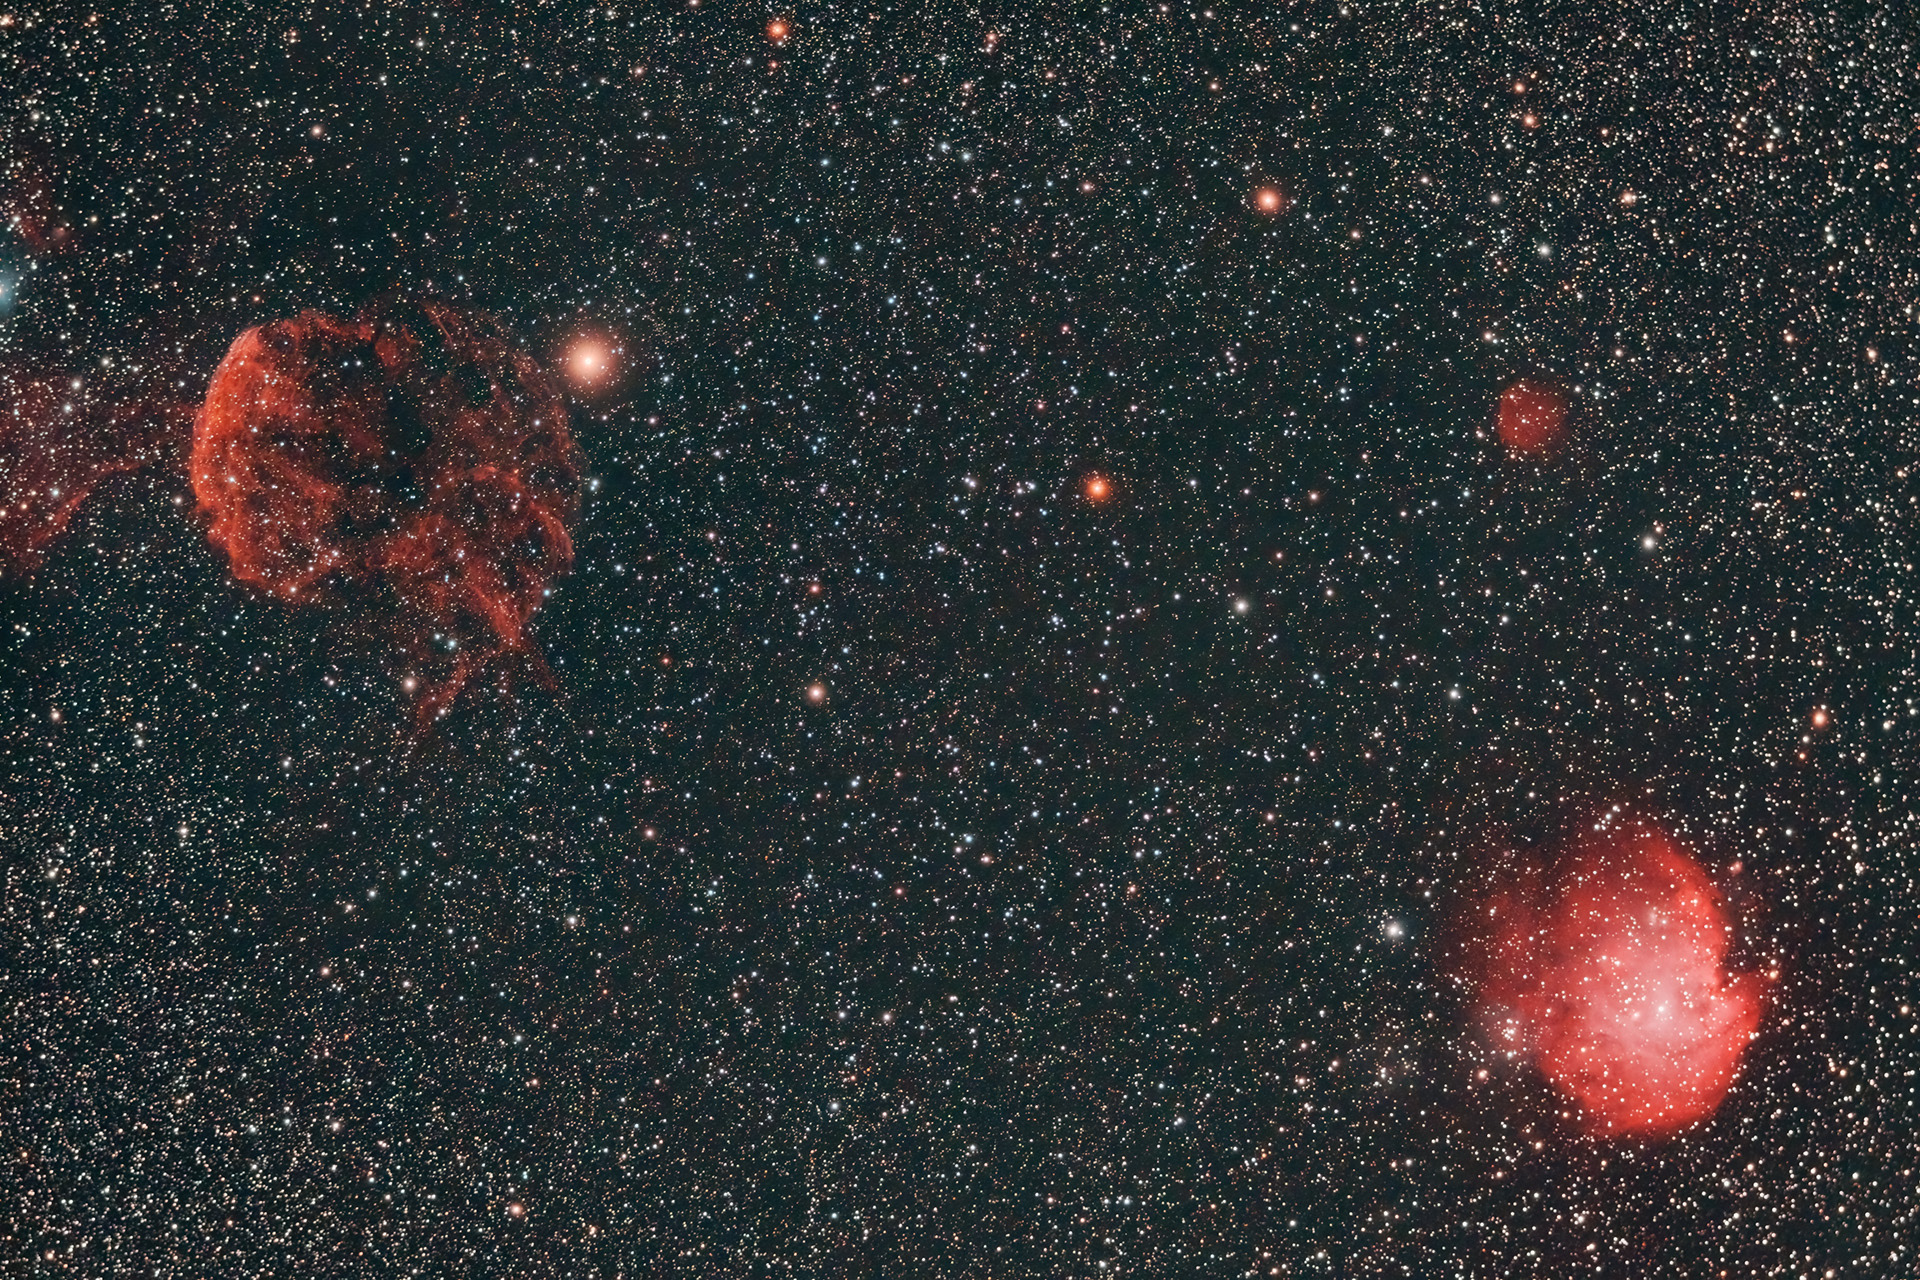 20210305-NGC2174-IC443-cls-TS70-R0.80-XT1-1600-66X125s-D19-F20-OF64-SIRIL-ASF-PS-3-1920.jpg.82930ed1fba917a3940110fde0527d81.jpg